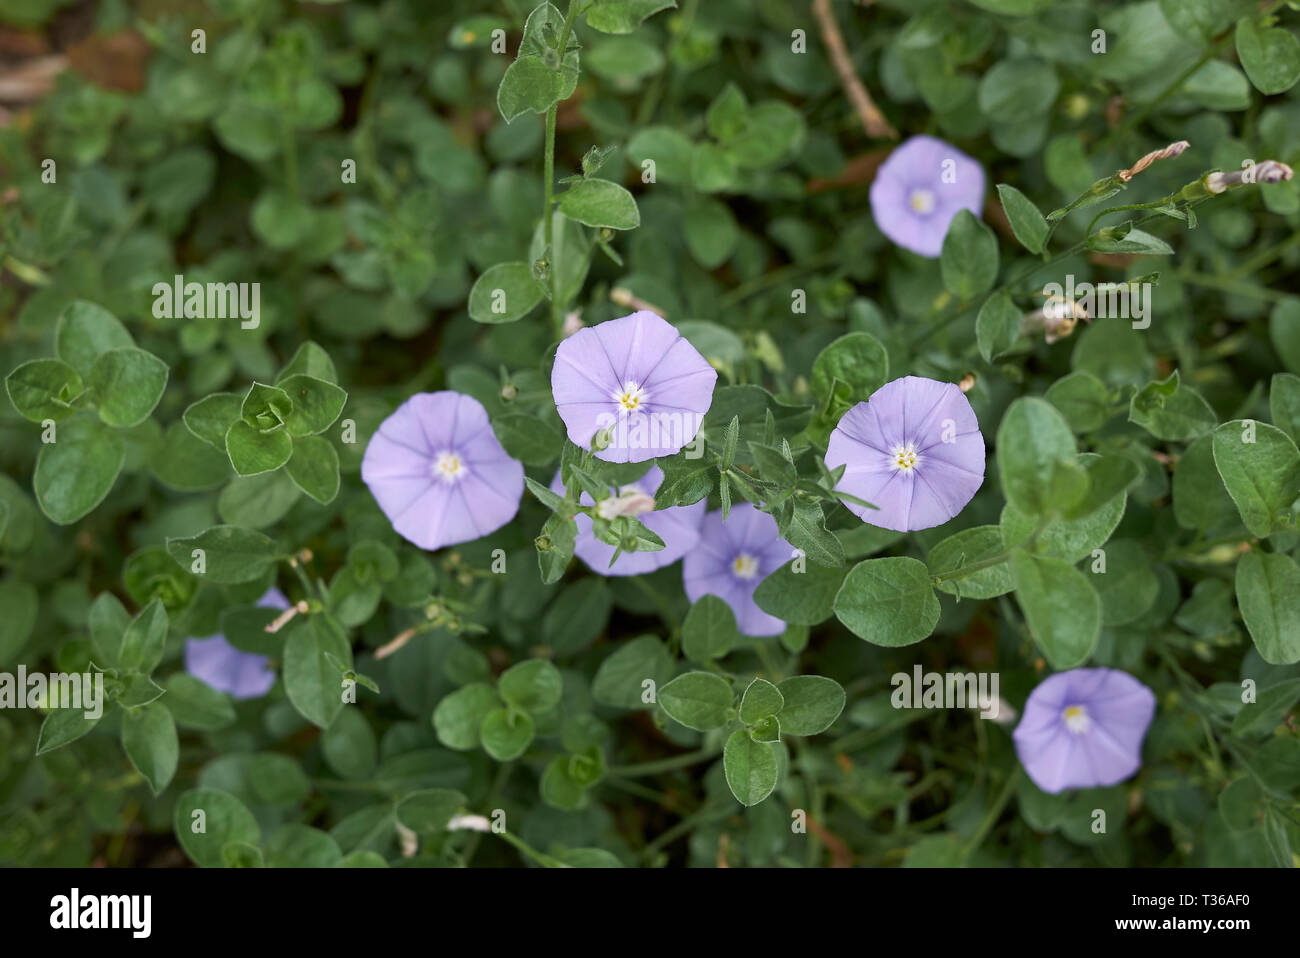 Convolvulus sabatius violet flowers Stock Photo